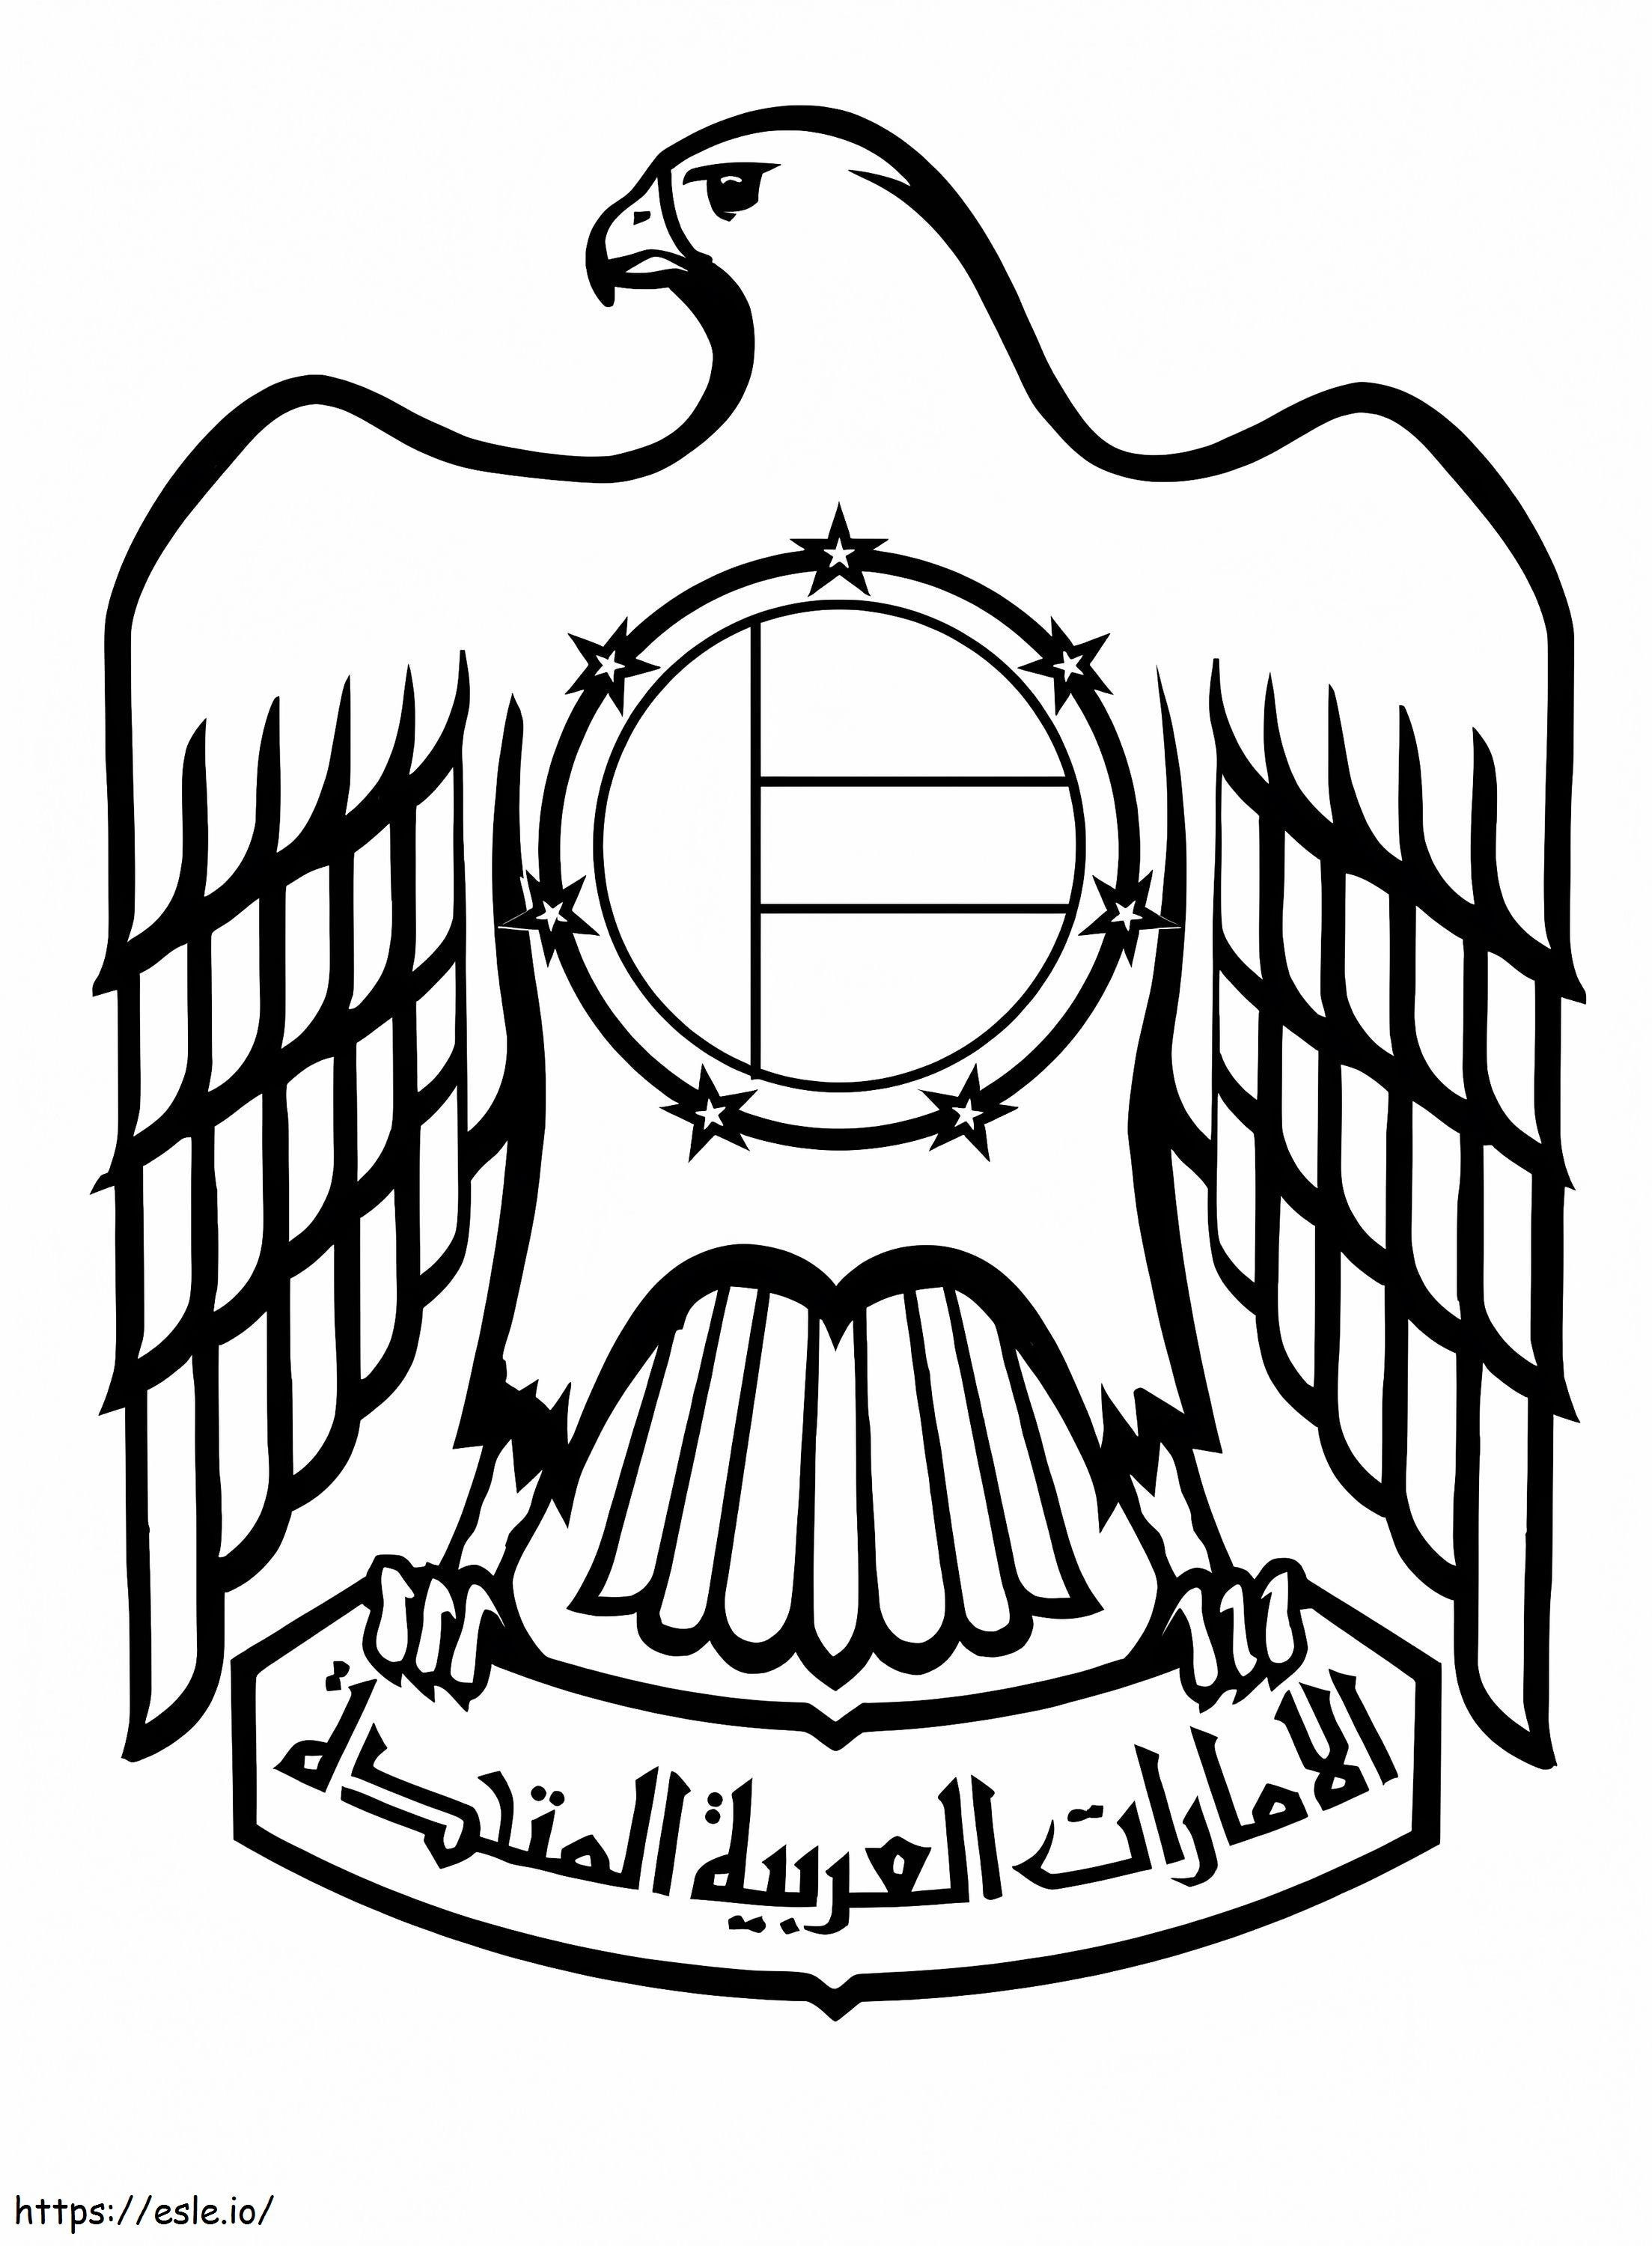 Herb Zjednoczonych Emiratów Arabskich kolorowanka